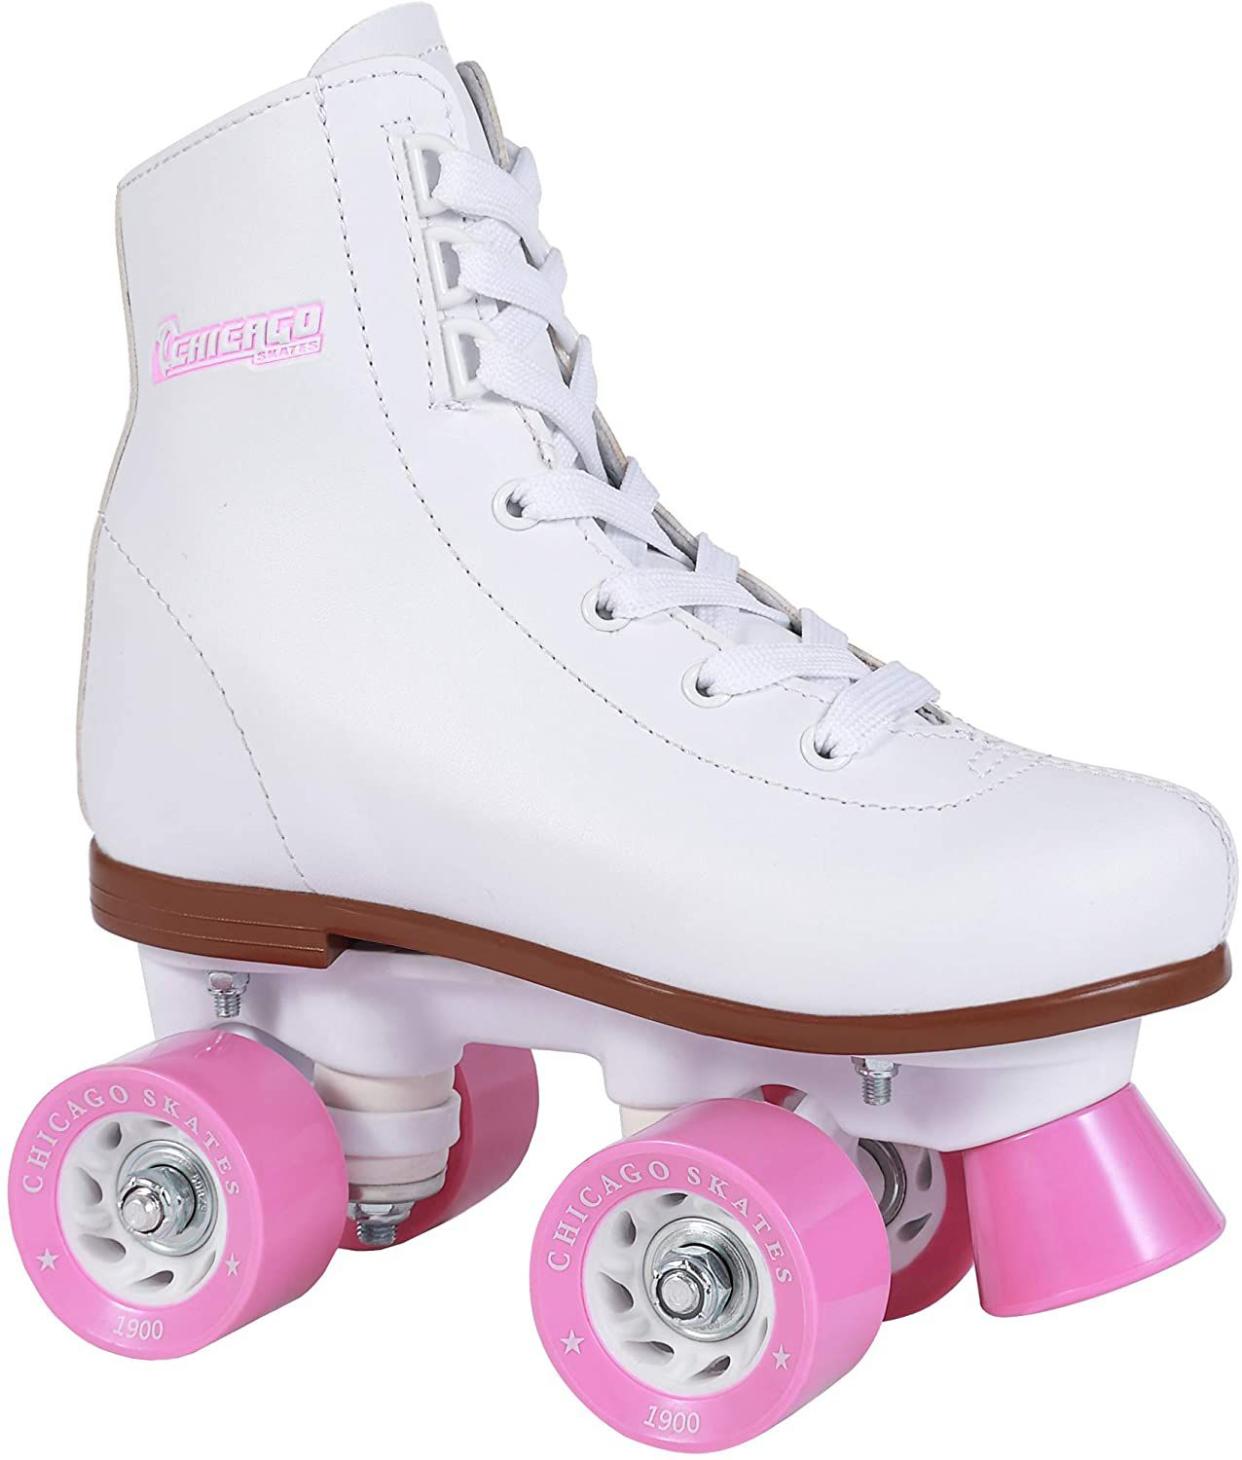 Chicago Girls Rink Roller Skate - White Youth Quad Skates